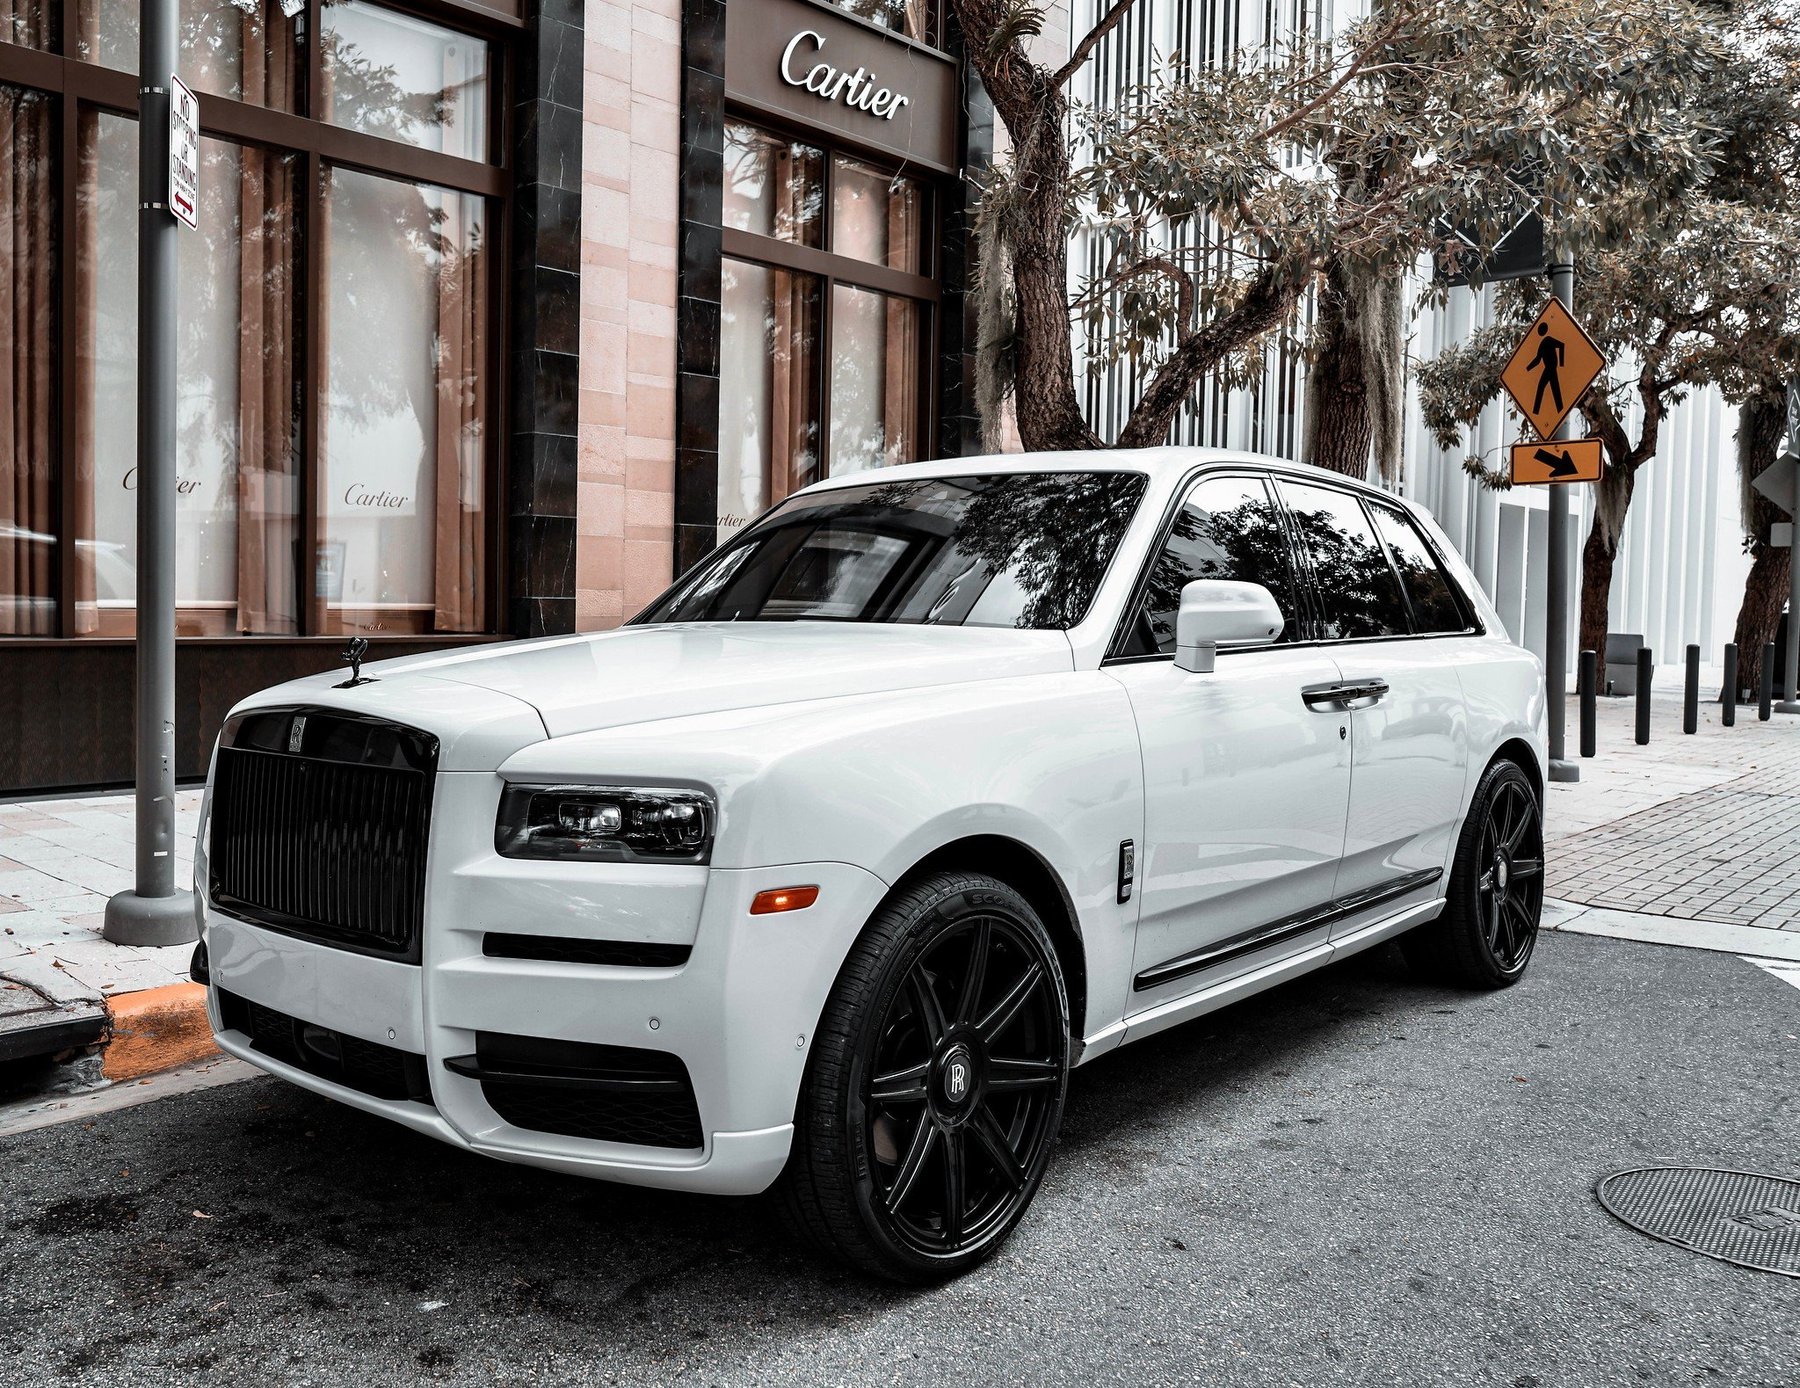 Rent a Rolls Royce Cullinan NYC